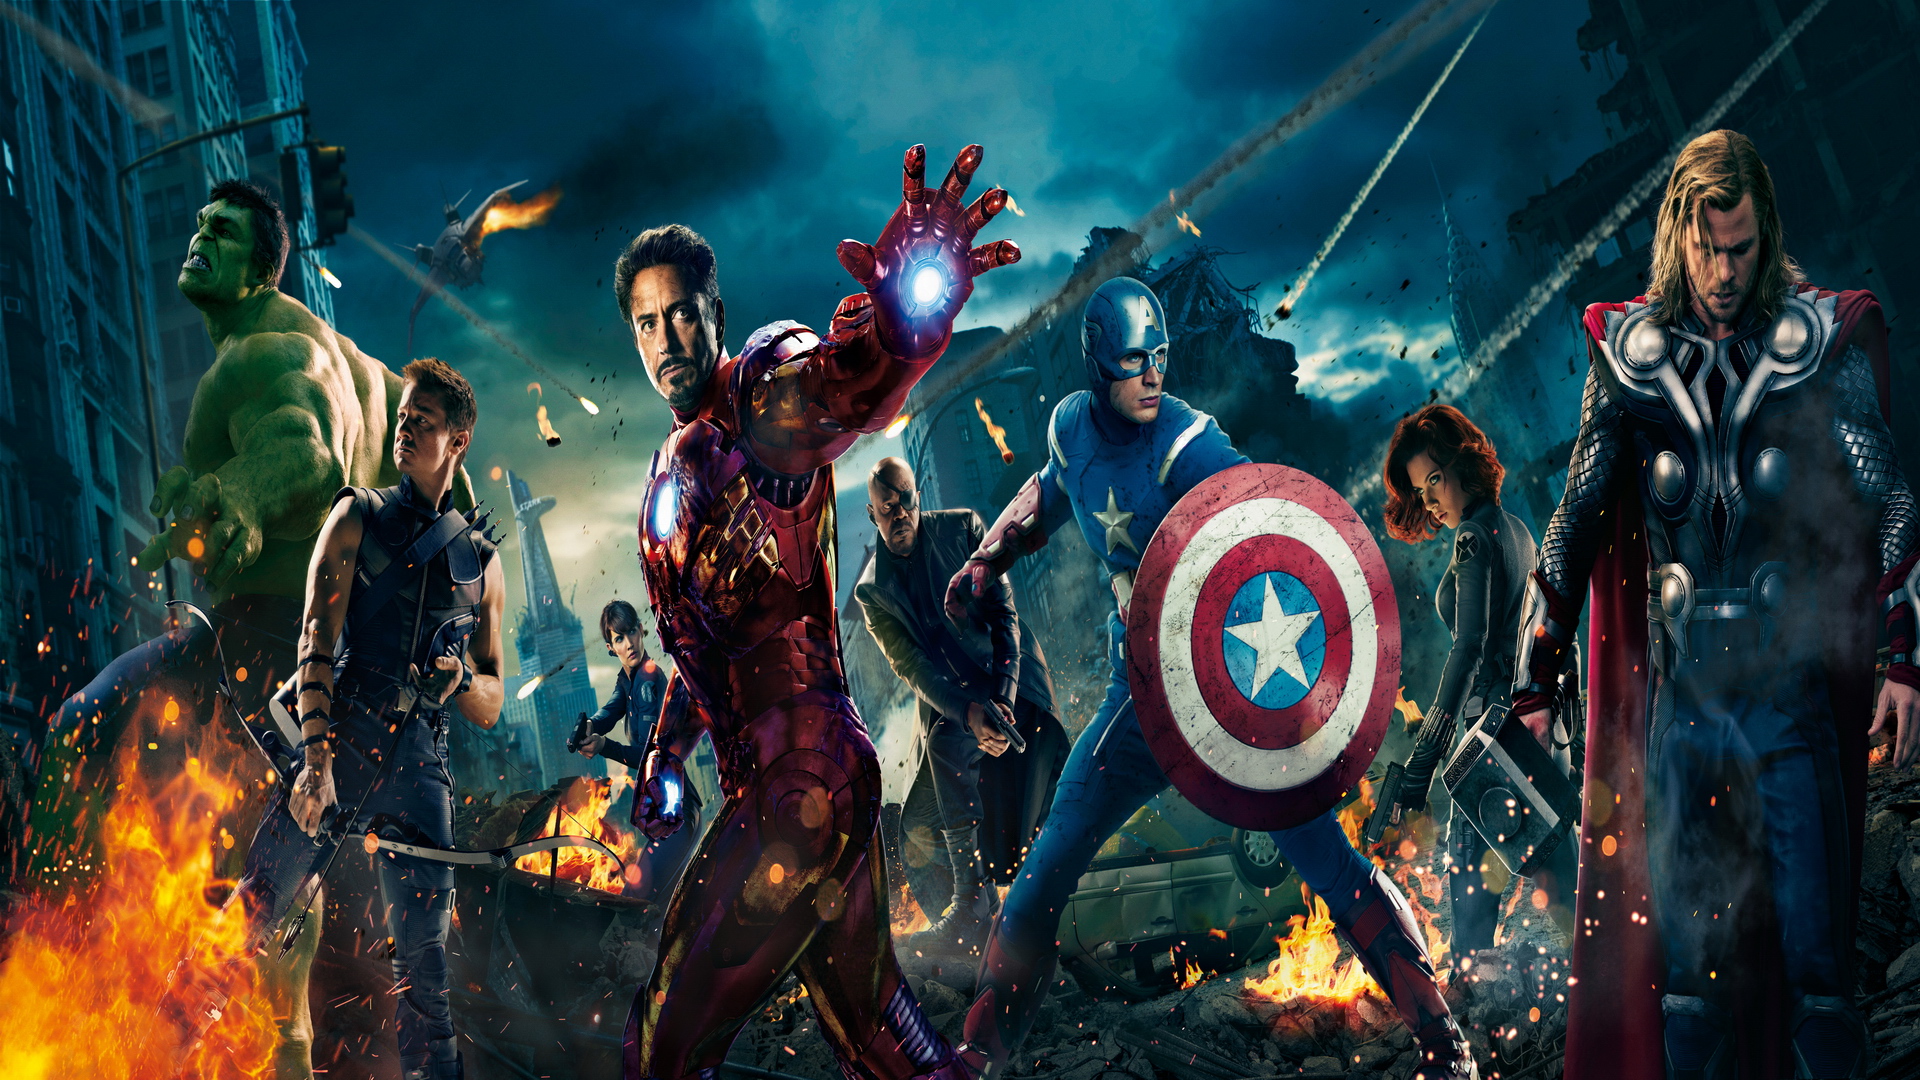  Avengers  HD  Wallpapers  1080p WallpaperSafari